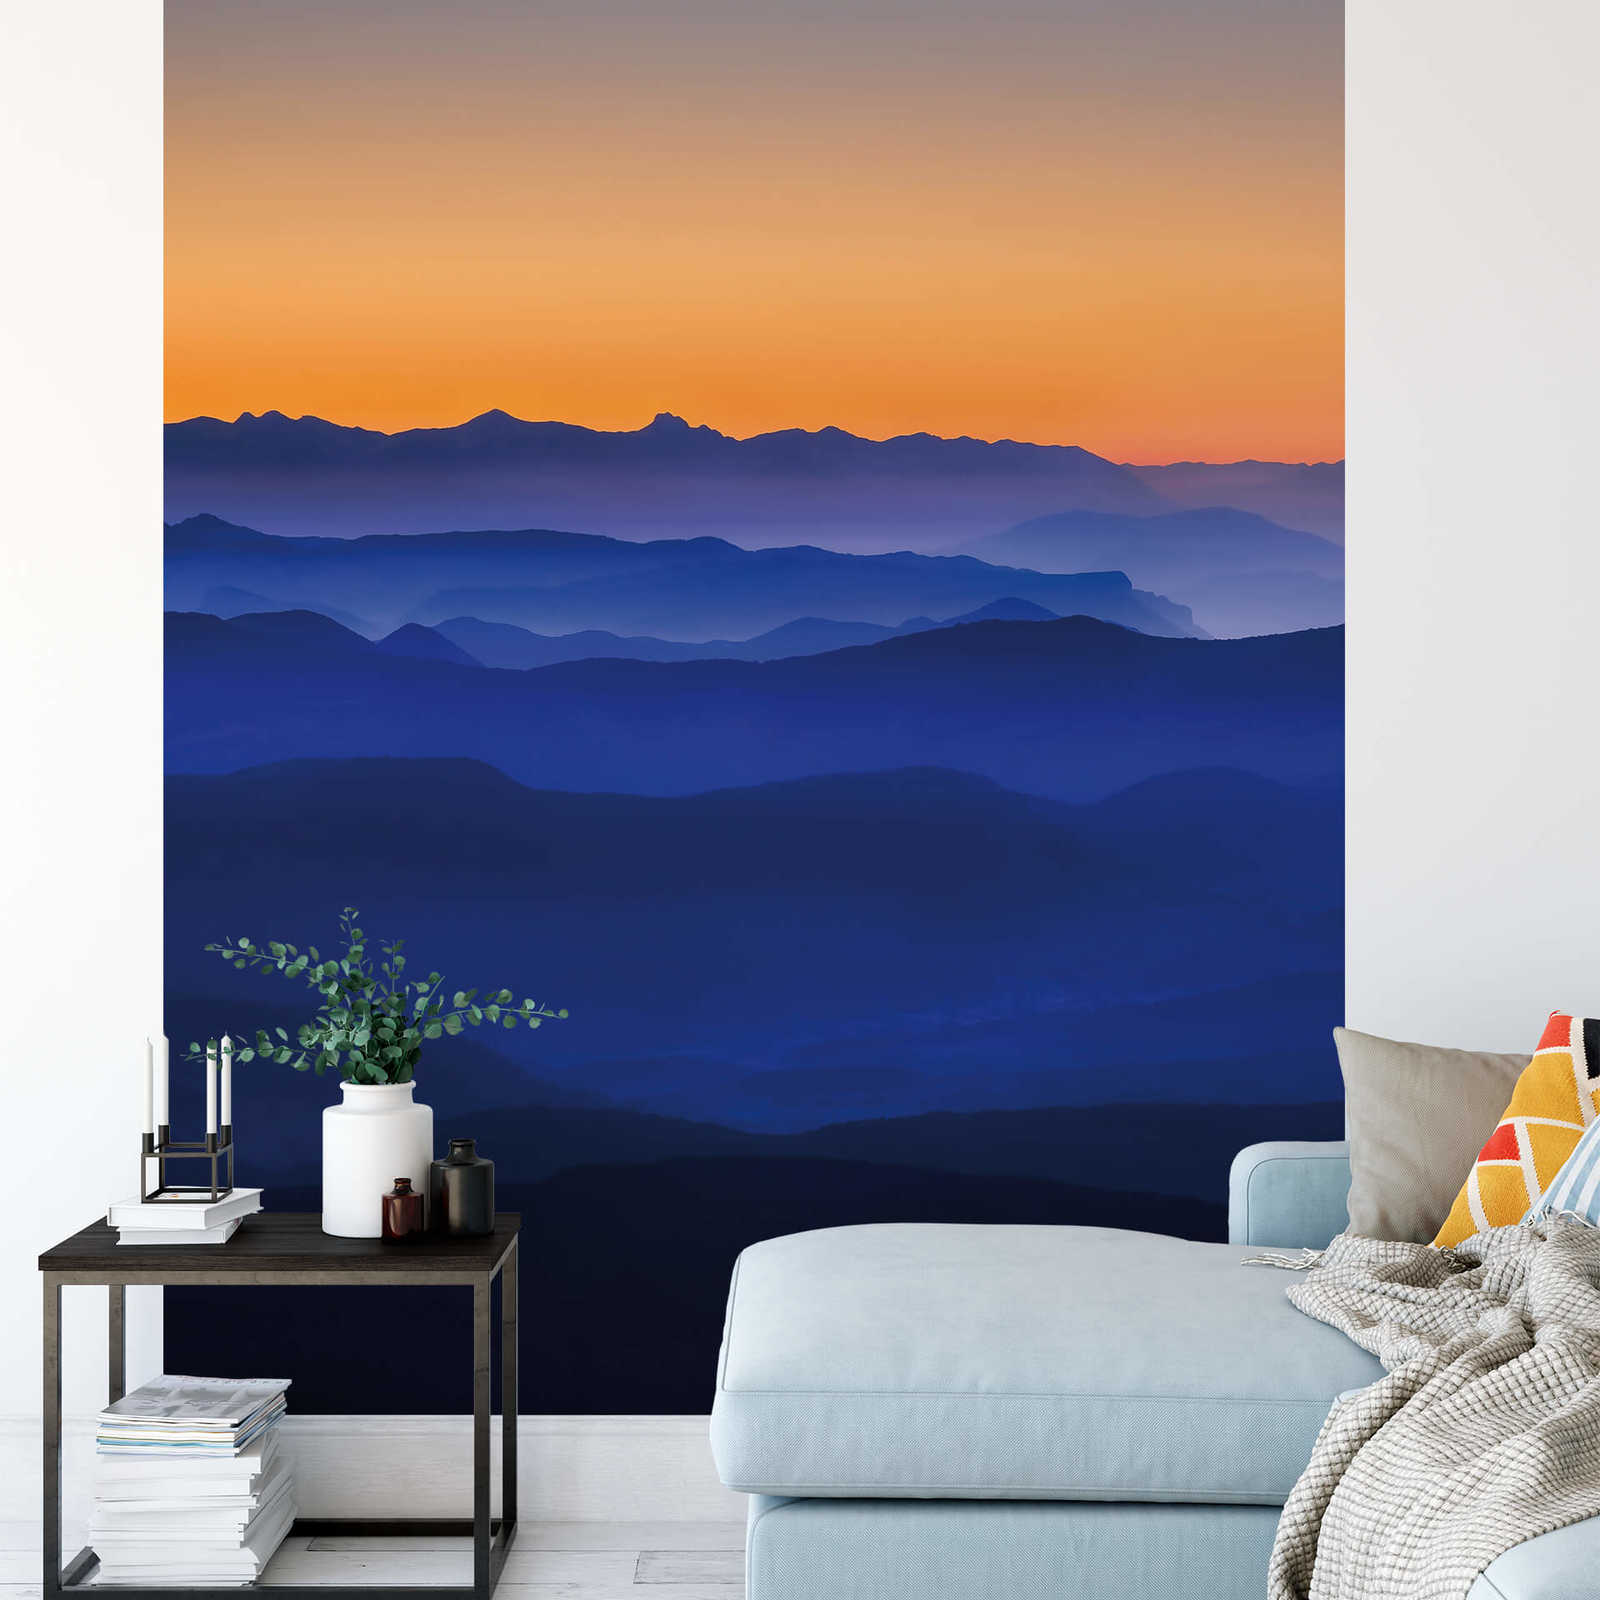             Mountains at Dusk Wallpaper - Blauw, Oranje, Geel
        